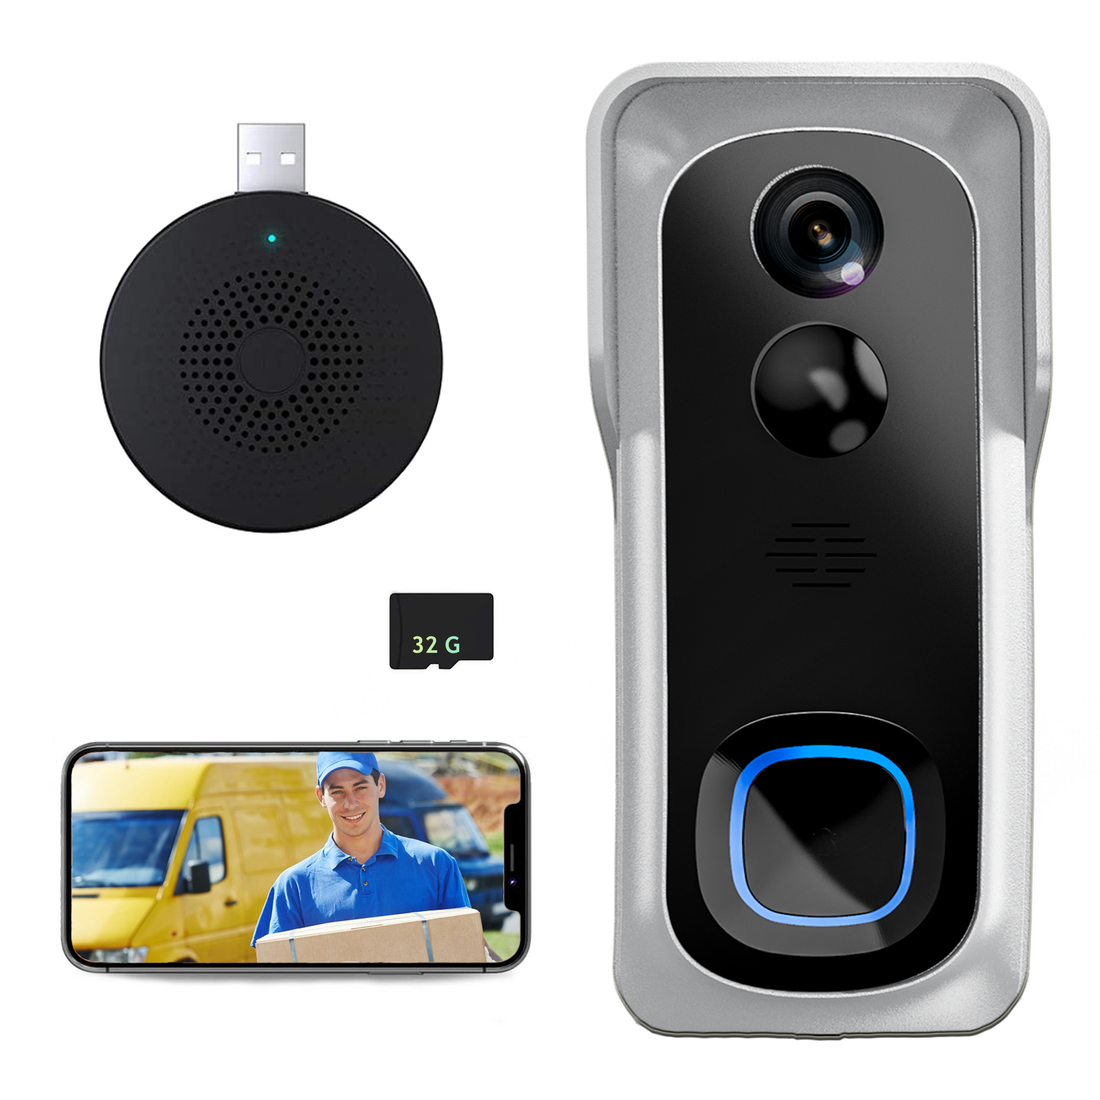 How to buy the best smart video doorbell?